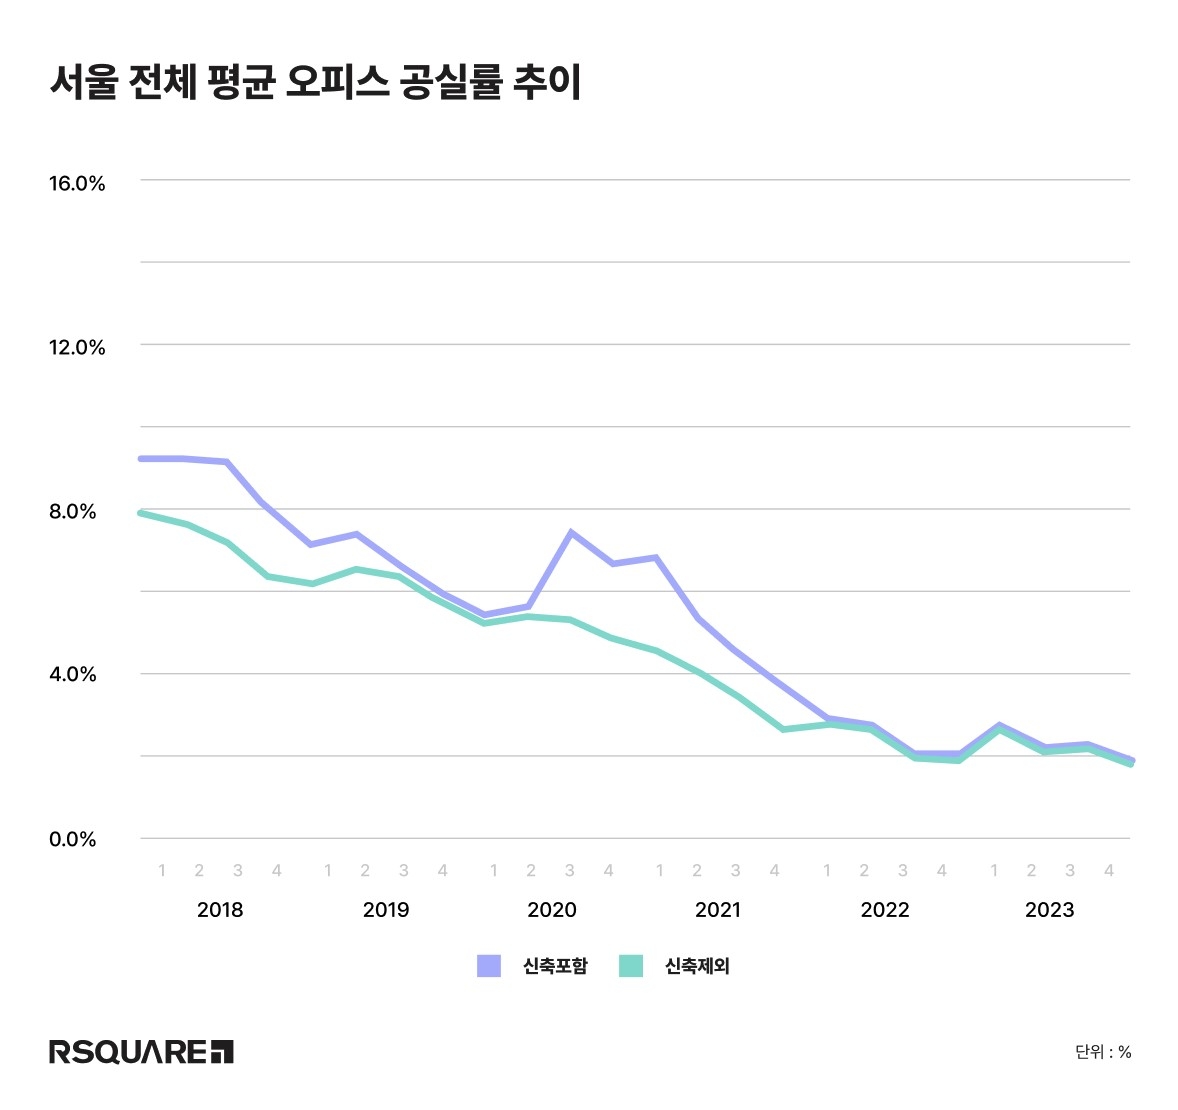 작년 4분기 서울·분당 주요 오피스 공실률 1.8%로 하락